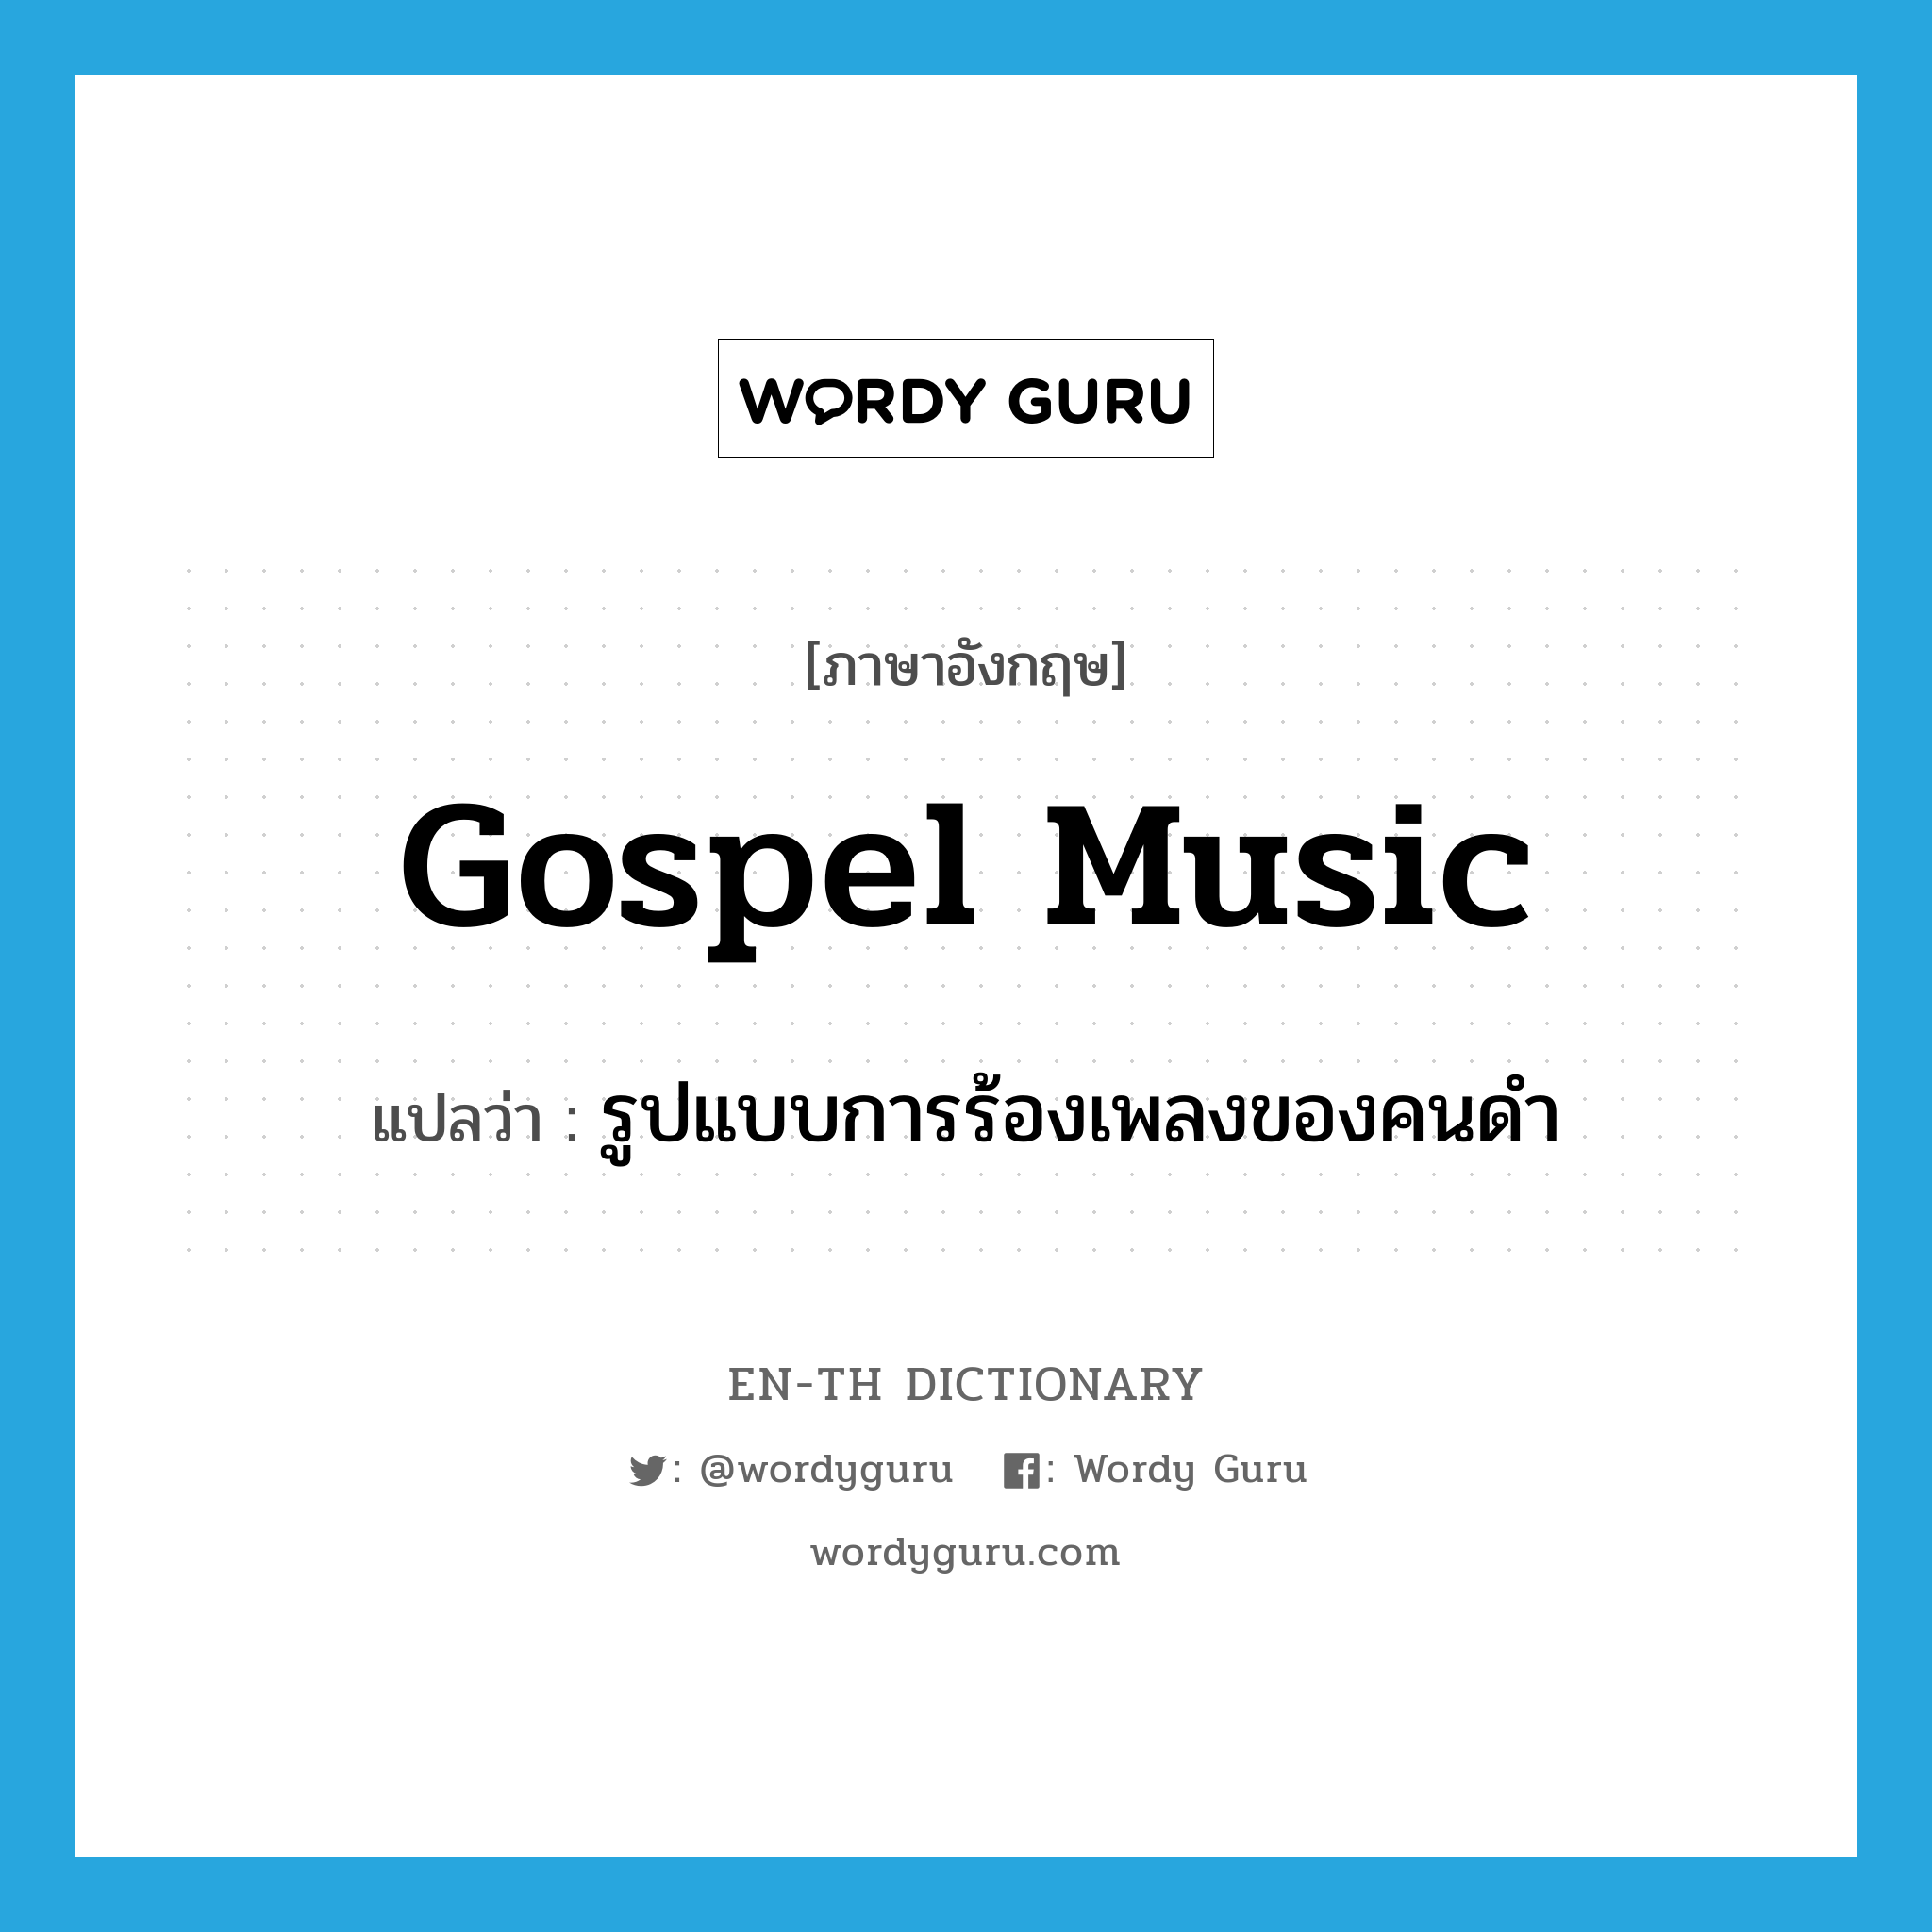 gospel music แปลว่า?, คำศัพท์ภาษาอังกฤษ gospel music แปลว่า รูปแบบการร้องเพลงของคนดำ ประเภท N หมวด N